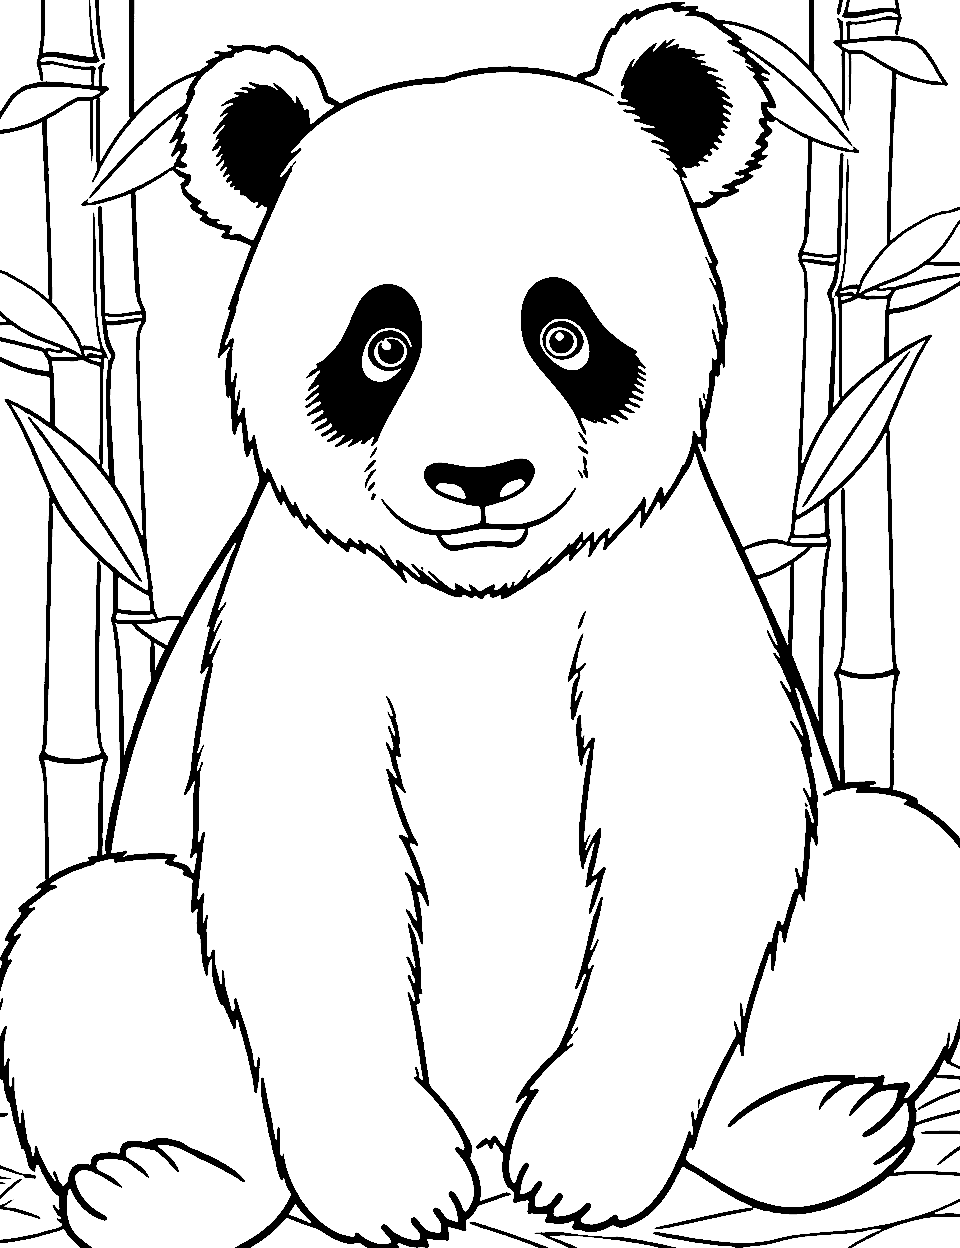 30 Panda Coloring Pages: Free Printable Sheets